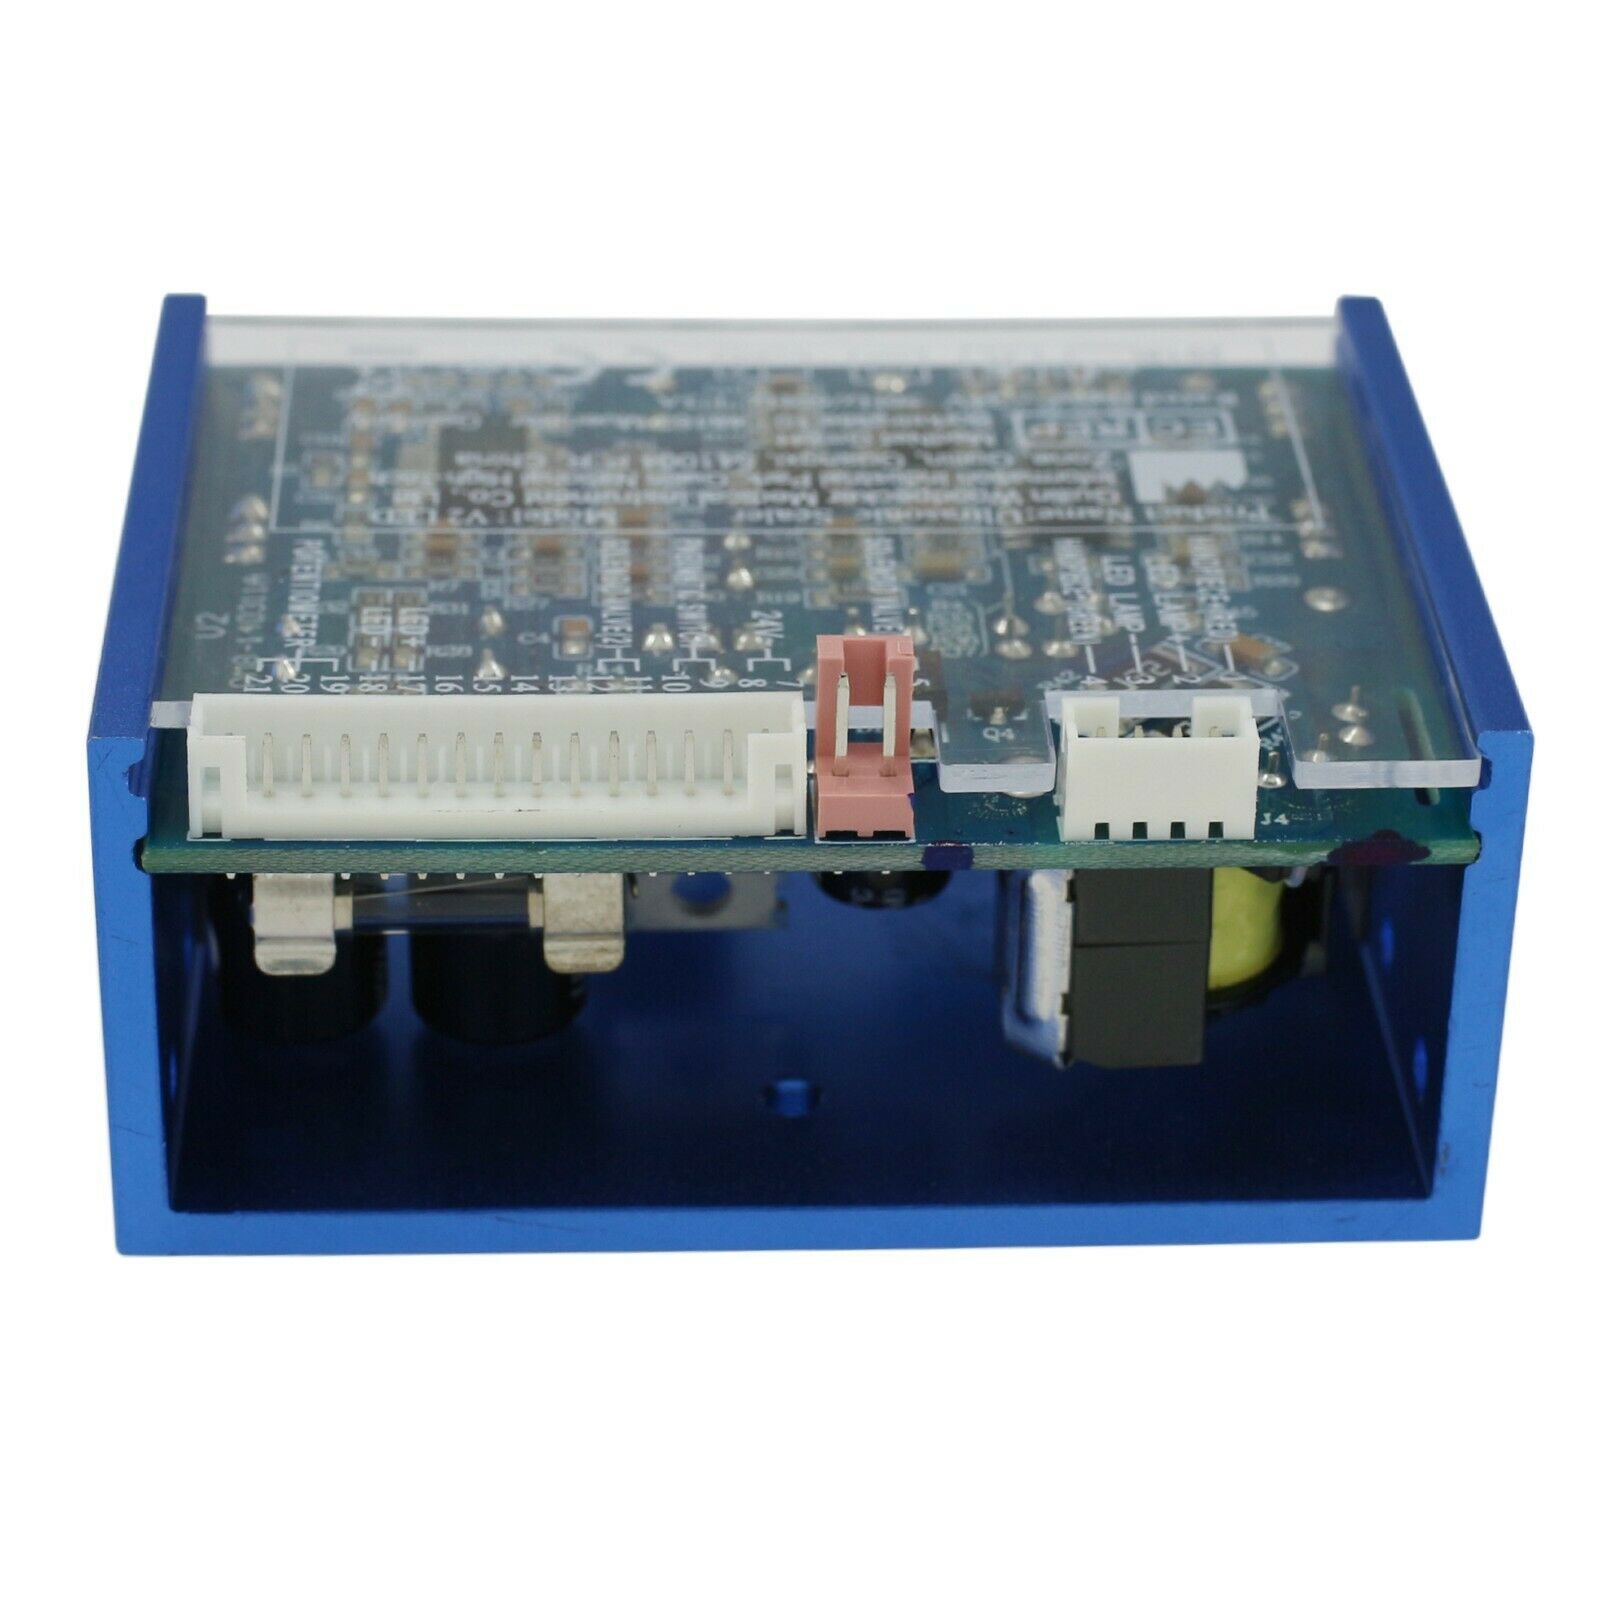 Woodpecker®内蔵式超音波スケーラーDTE-V2-LED メインユニット